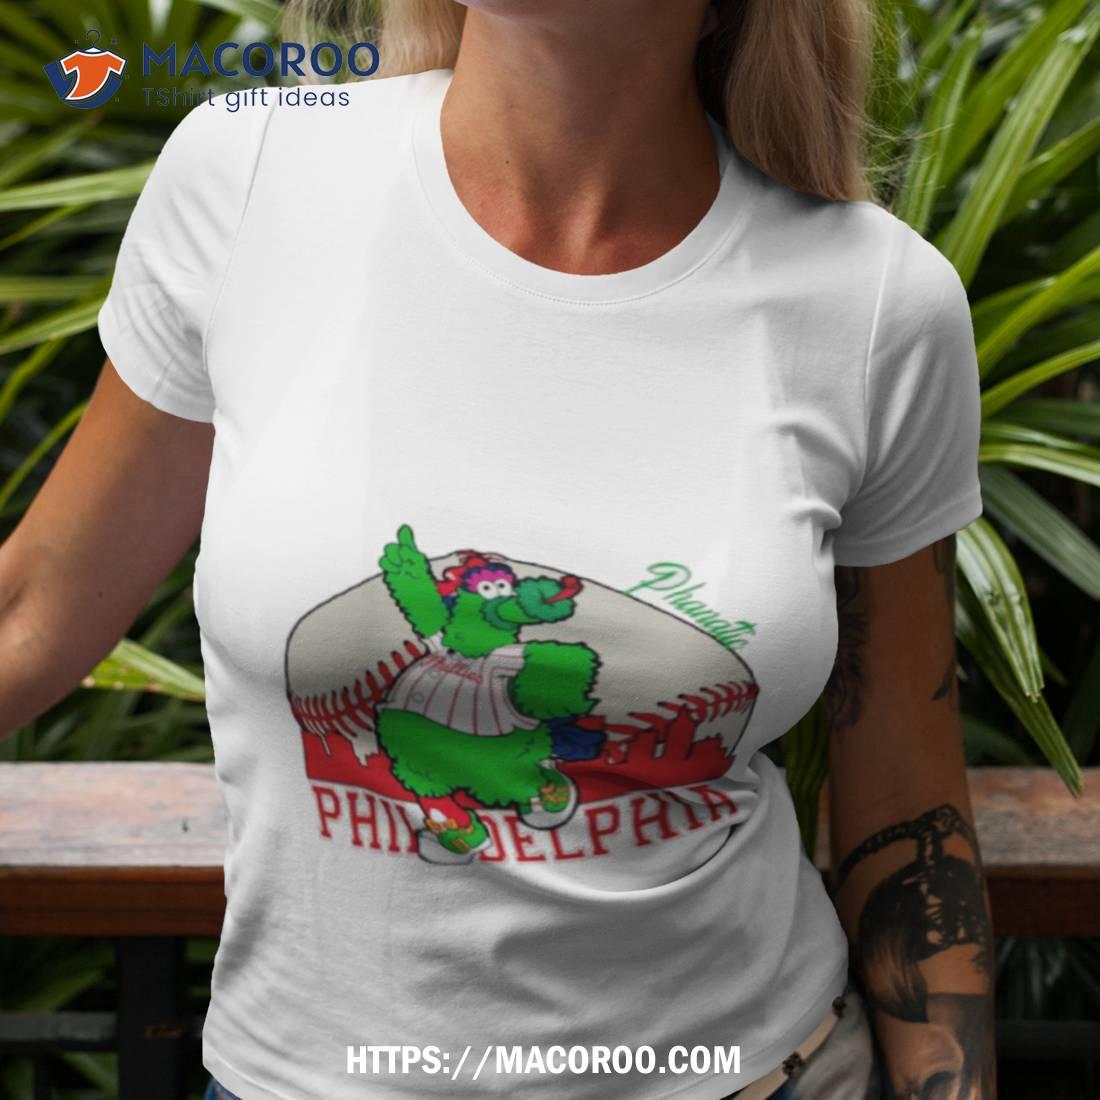 Phanatic Philadelphia Phillies Baseball Best T-Shirt